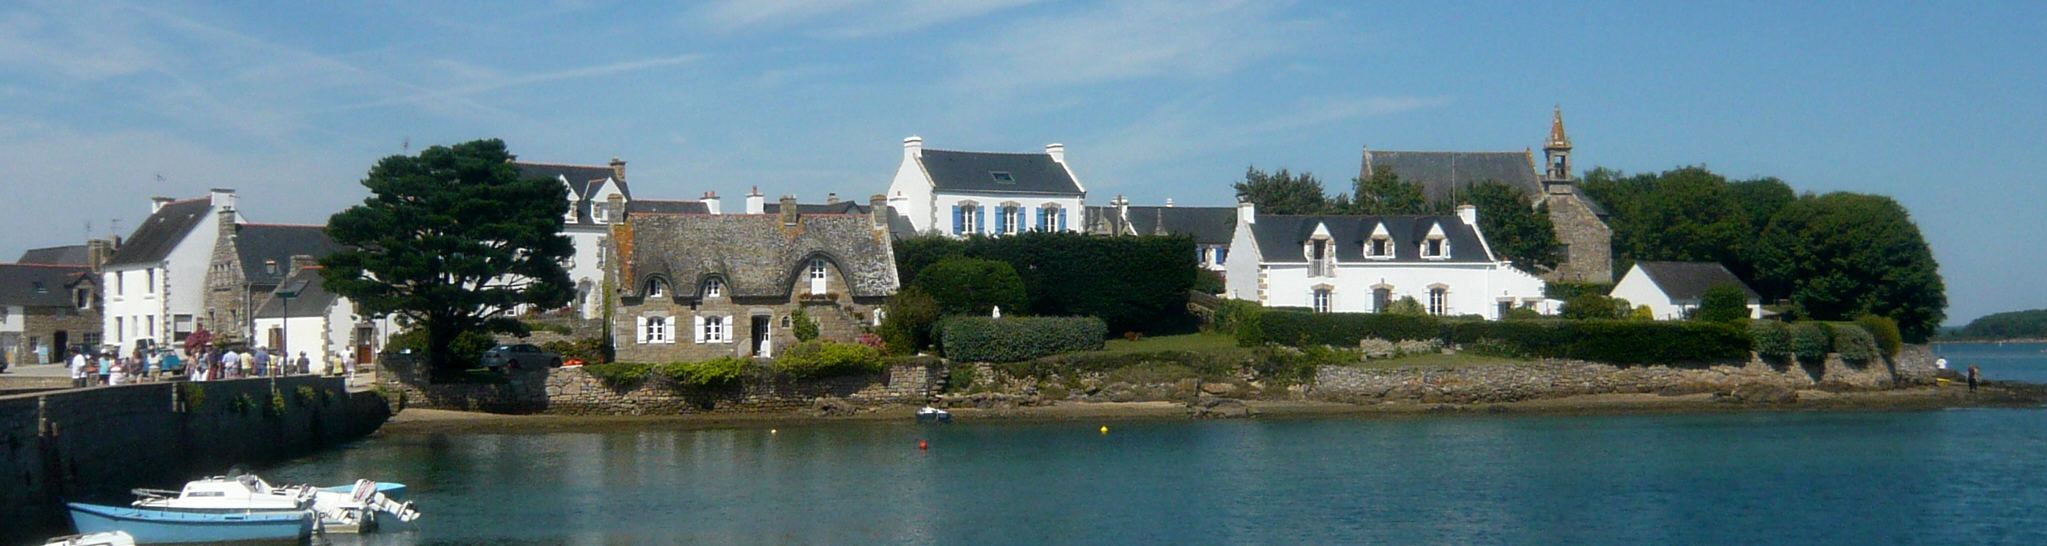 Visites guidées en Bretagne. Ici, St Cado, dans le Morbihan.